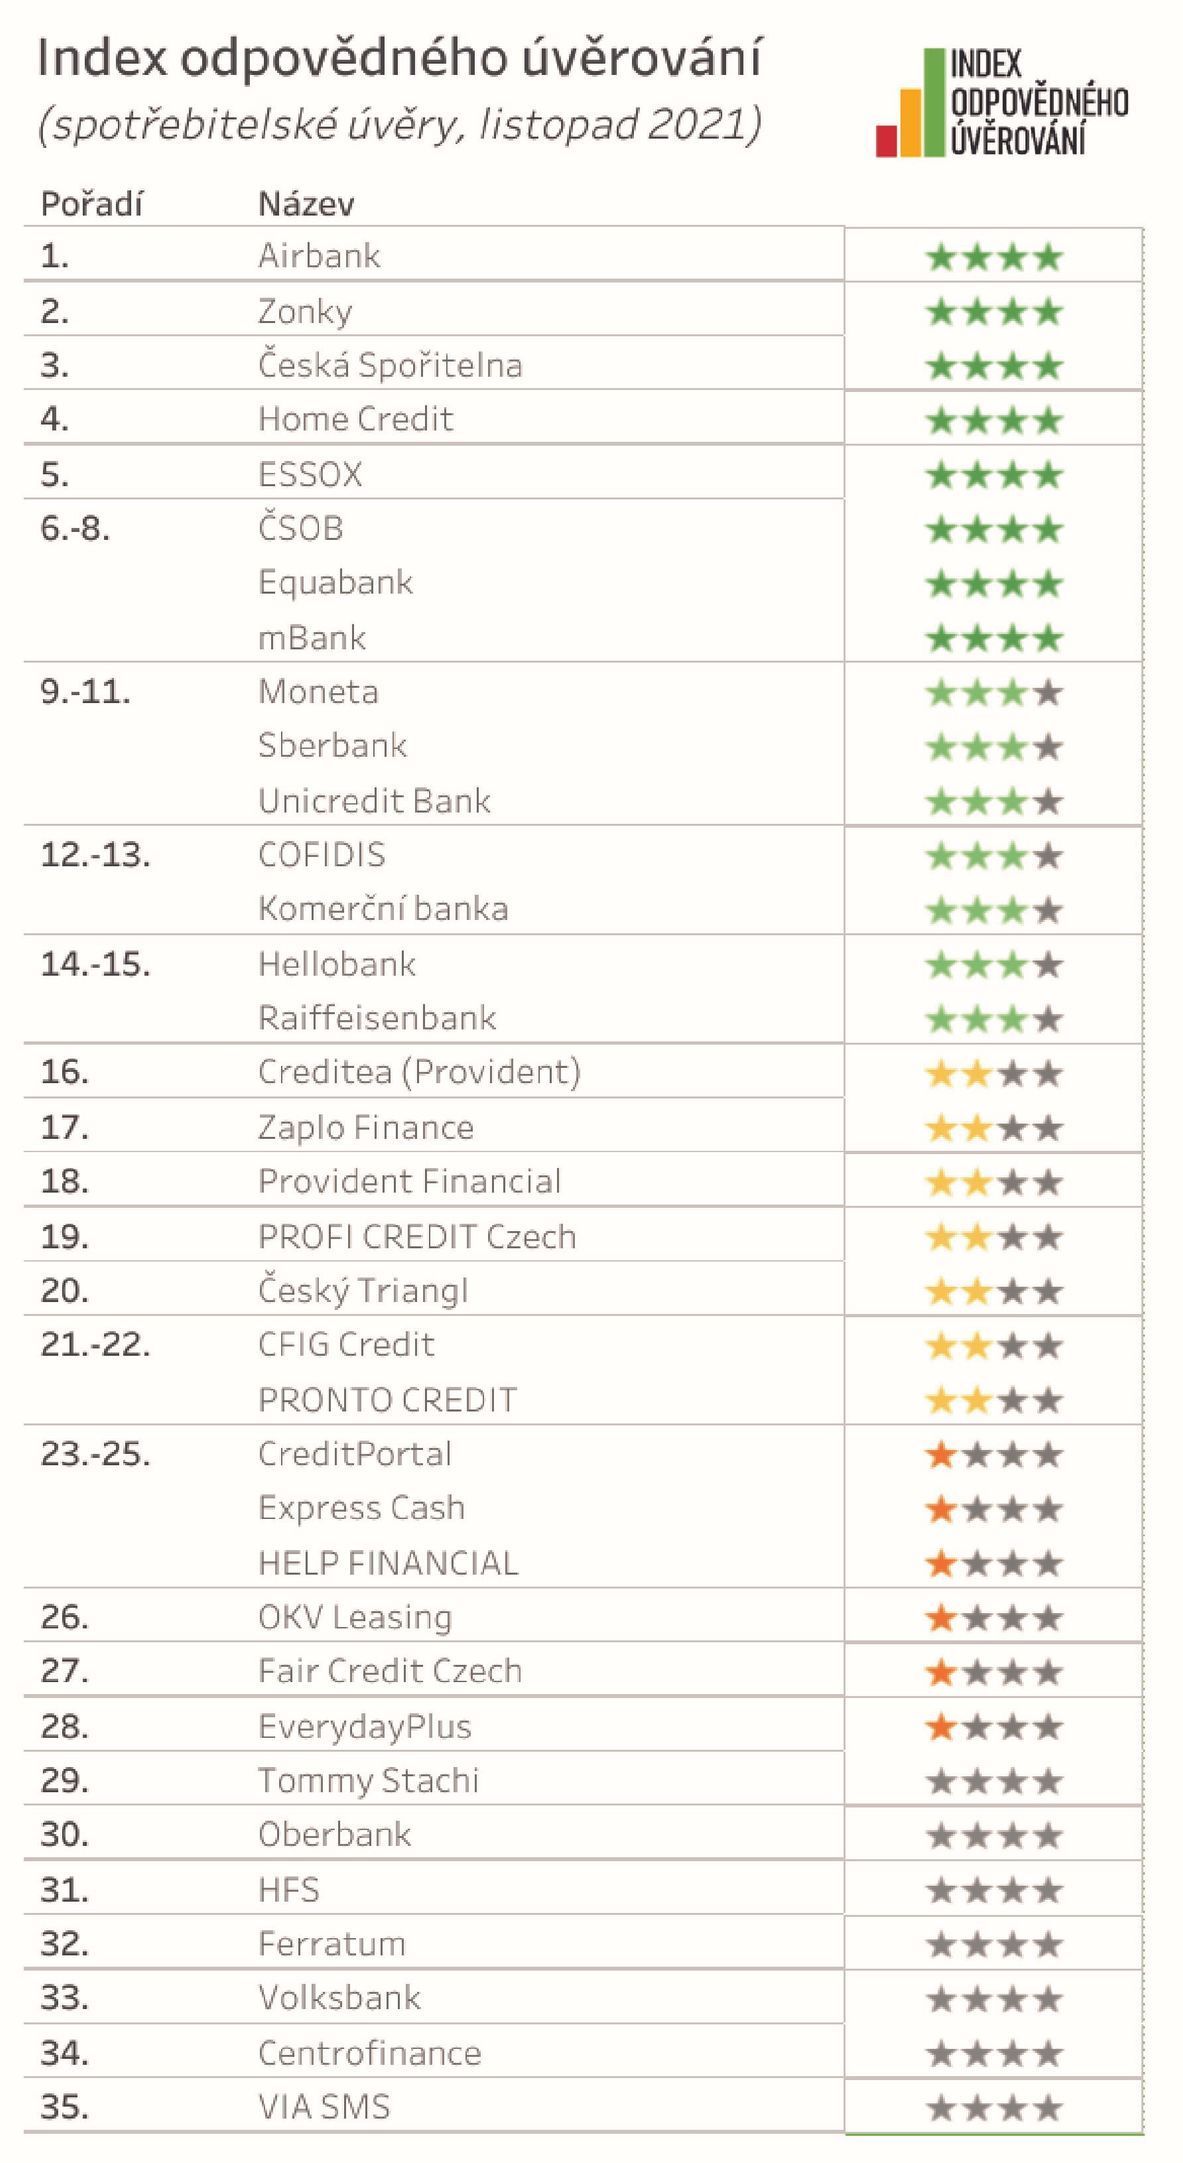 Index odpovědného úvěrování, listopad 2021